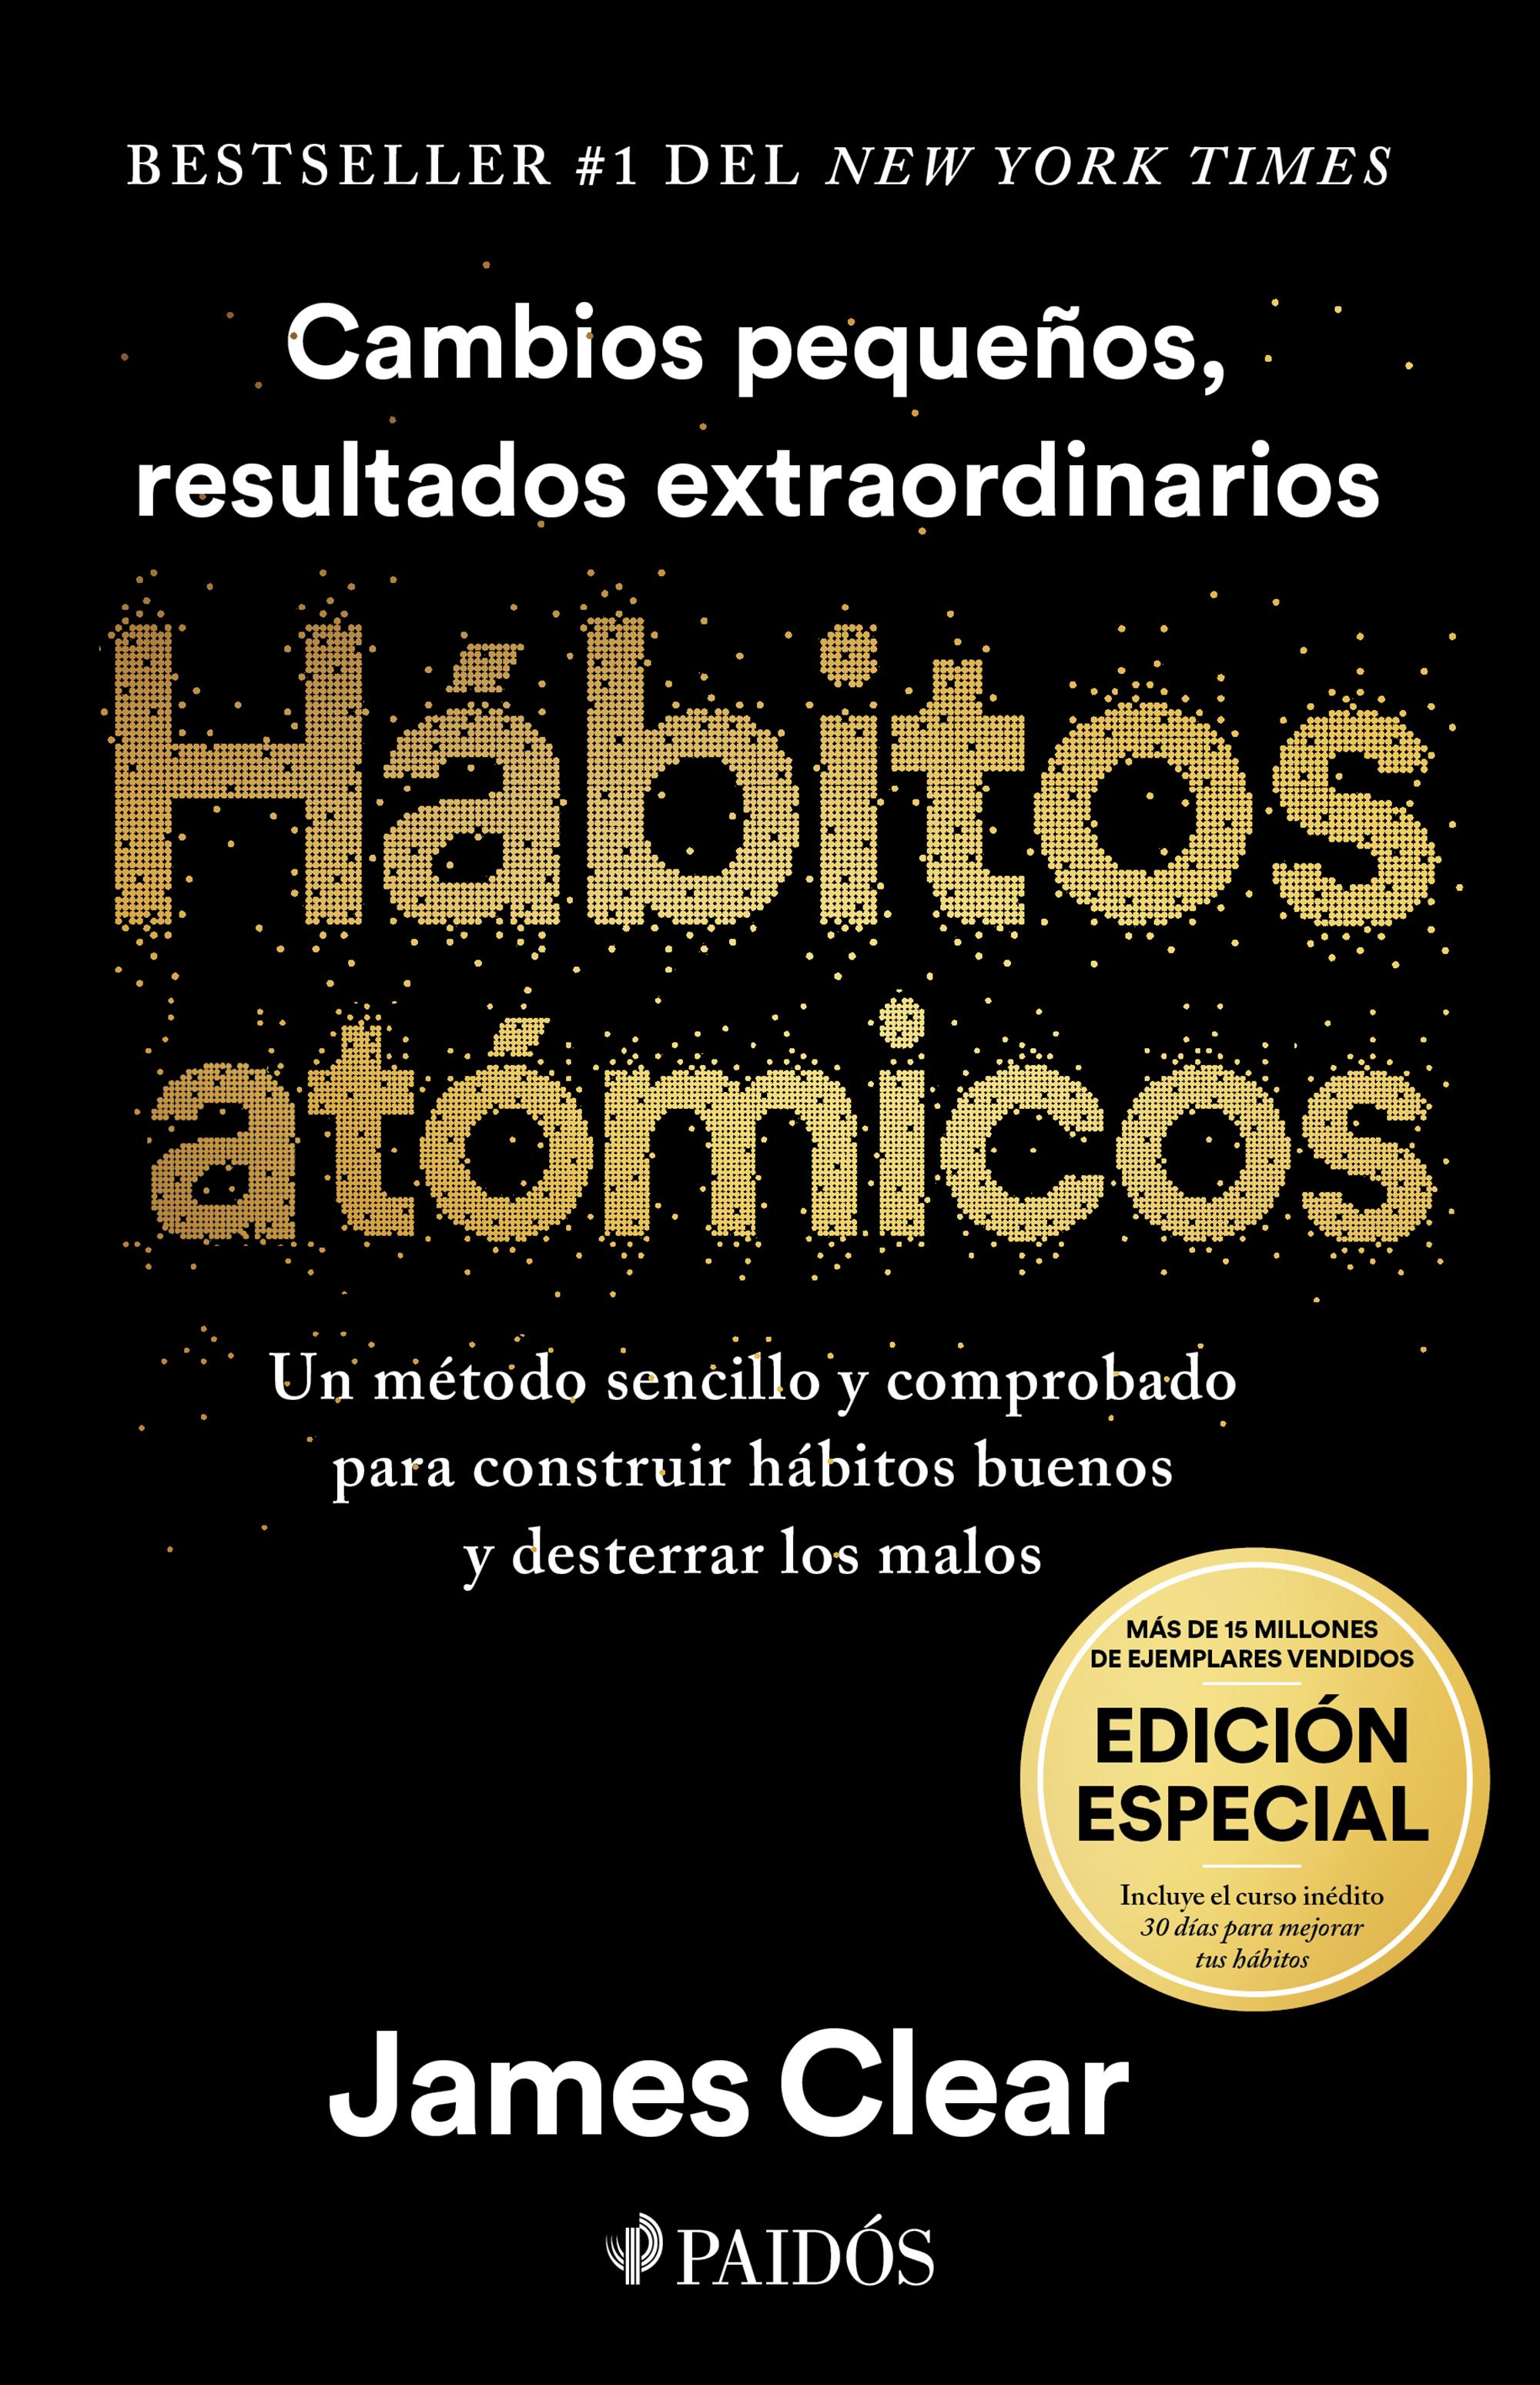 Hábitos atómicos / Pd. (Edición especial). CLEAR JAMES. Libro en